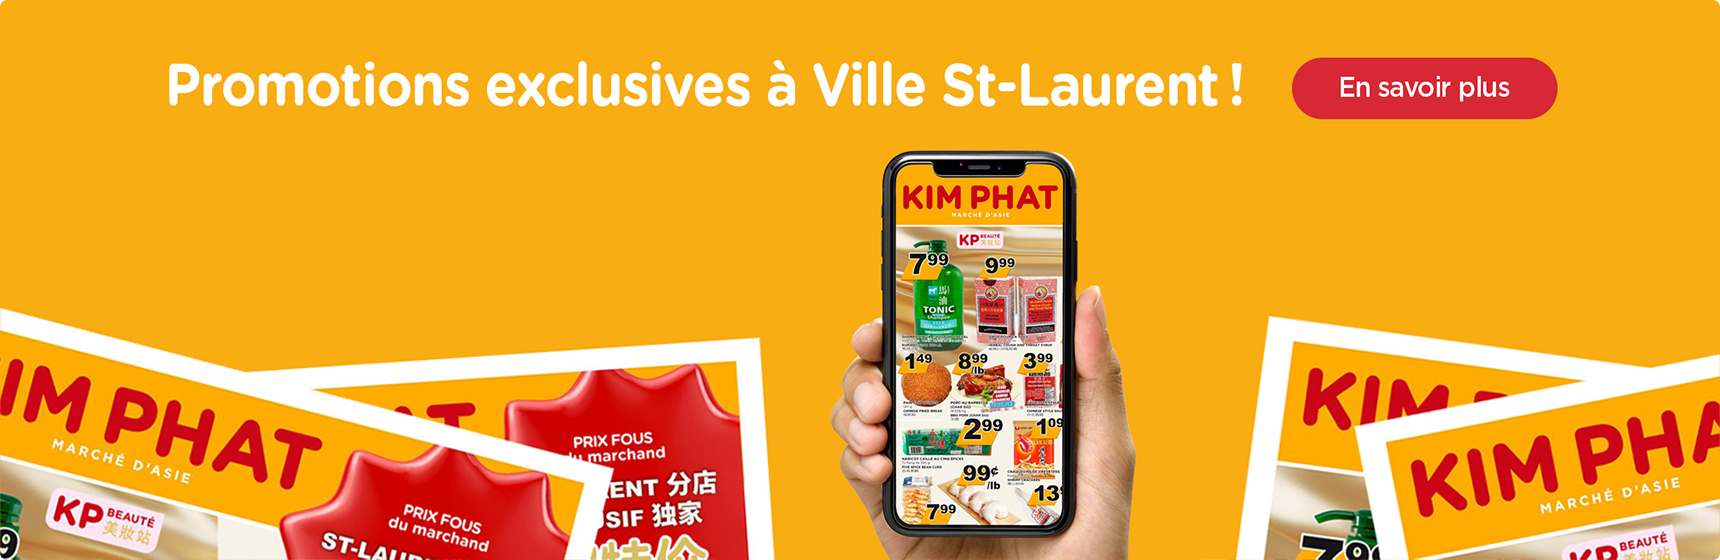 Promotions exclusives à Ville St-Laurent !